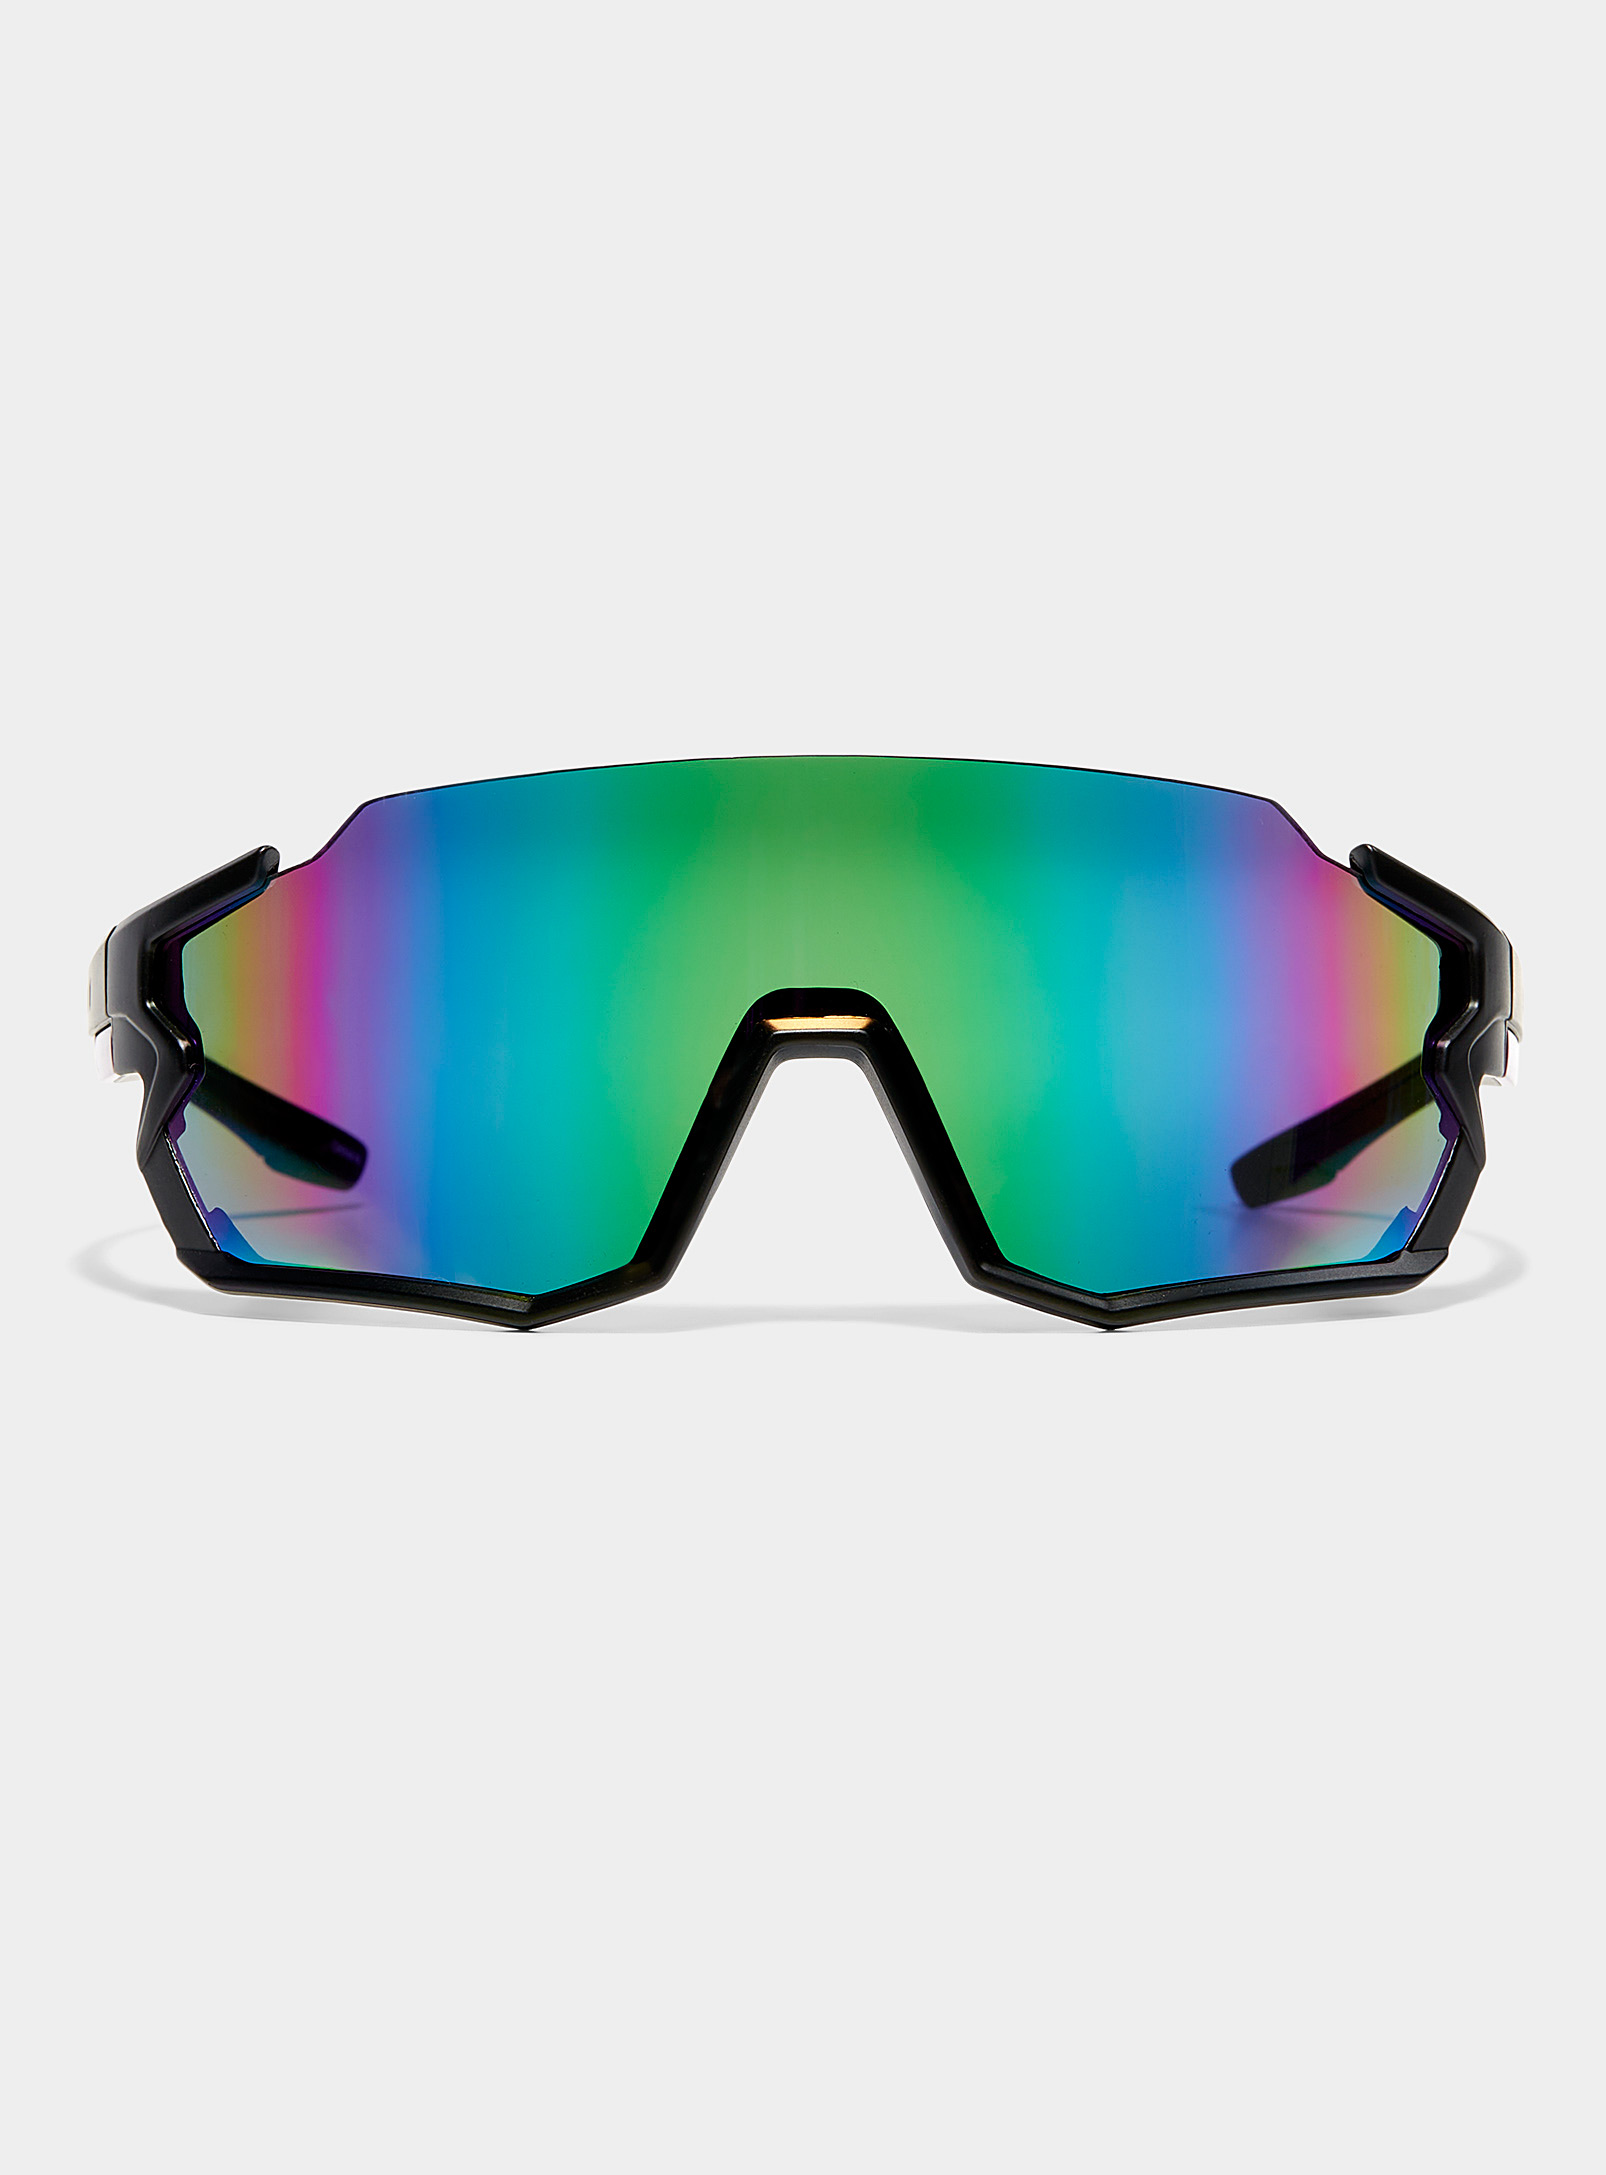 Le 31 - Men's Keith colourful shield sunglasses